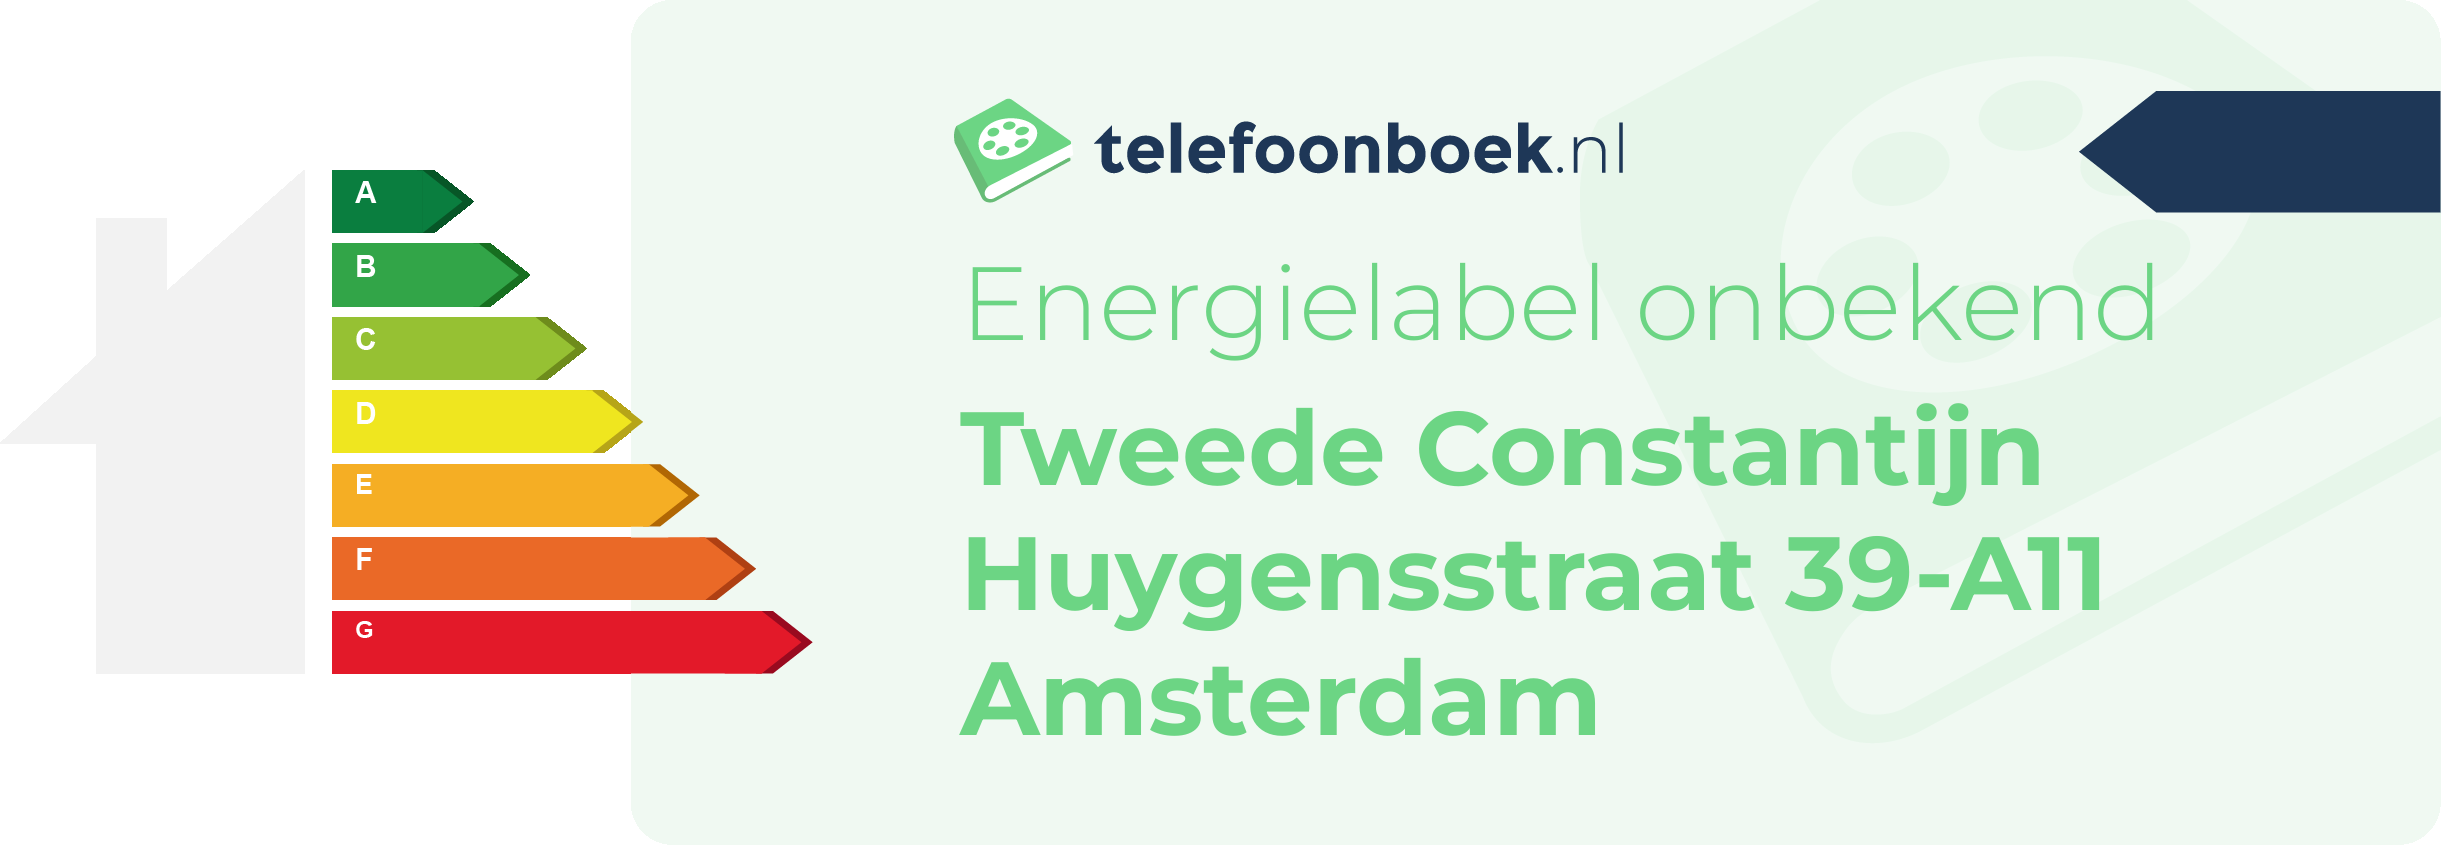 Energielabel Tweede Constantijn Huygensstraat 39-A11 Amsterdam